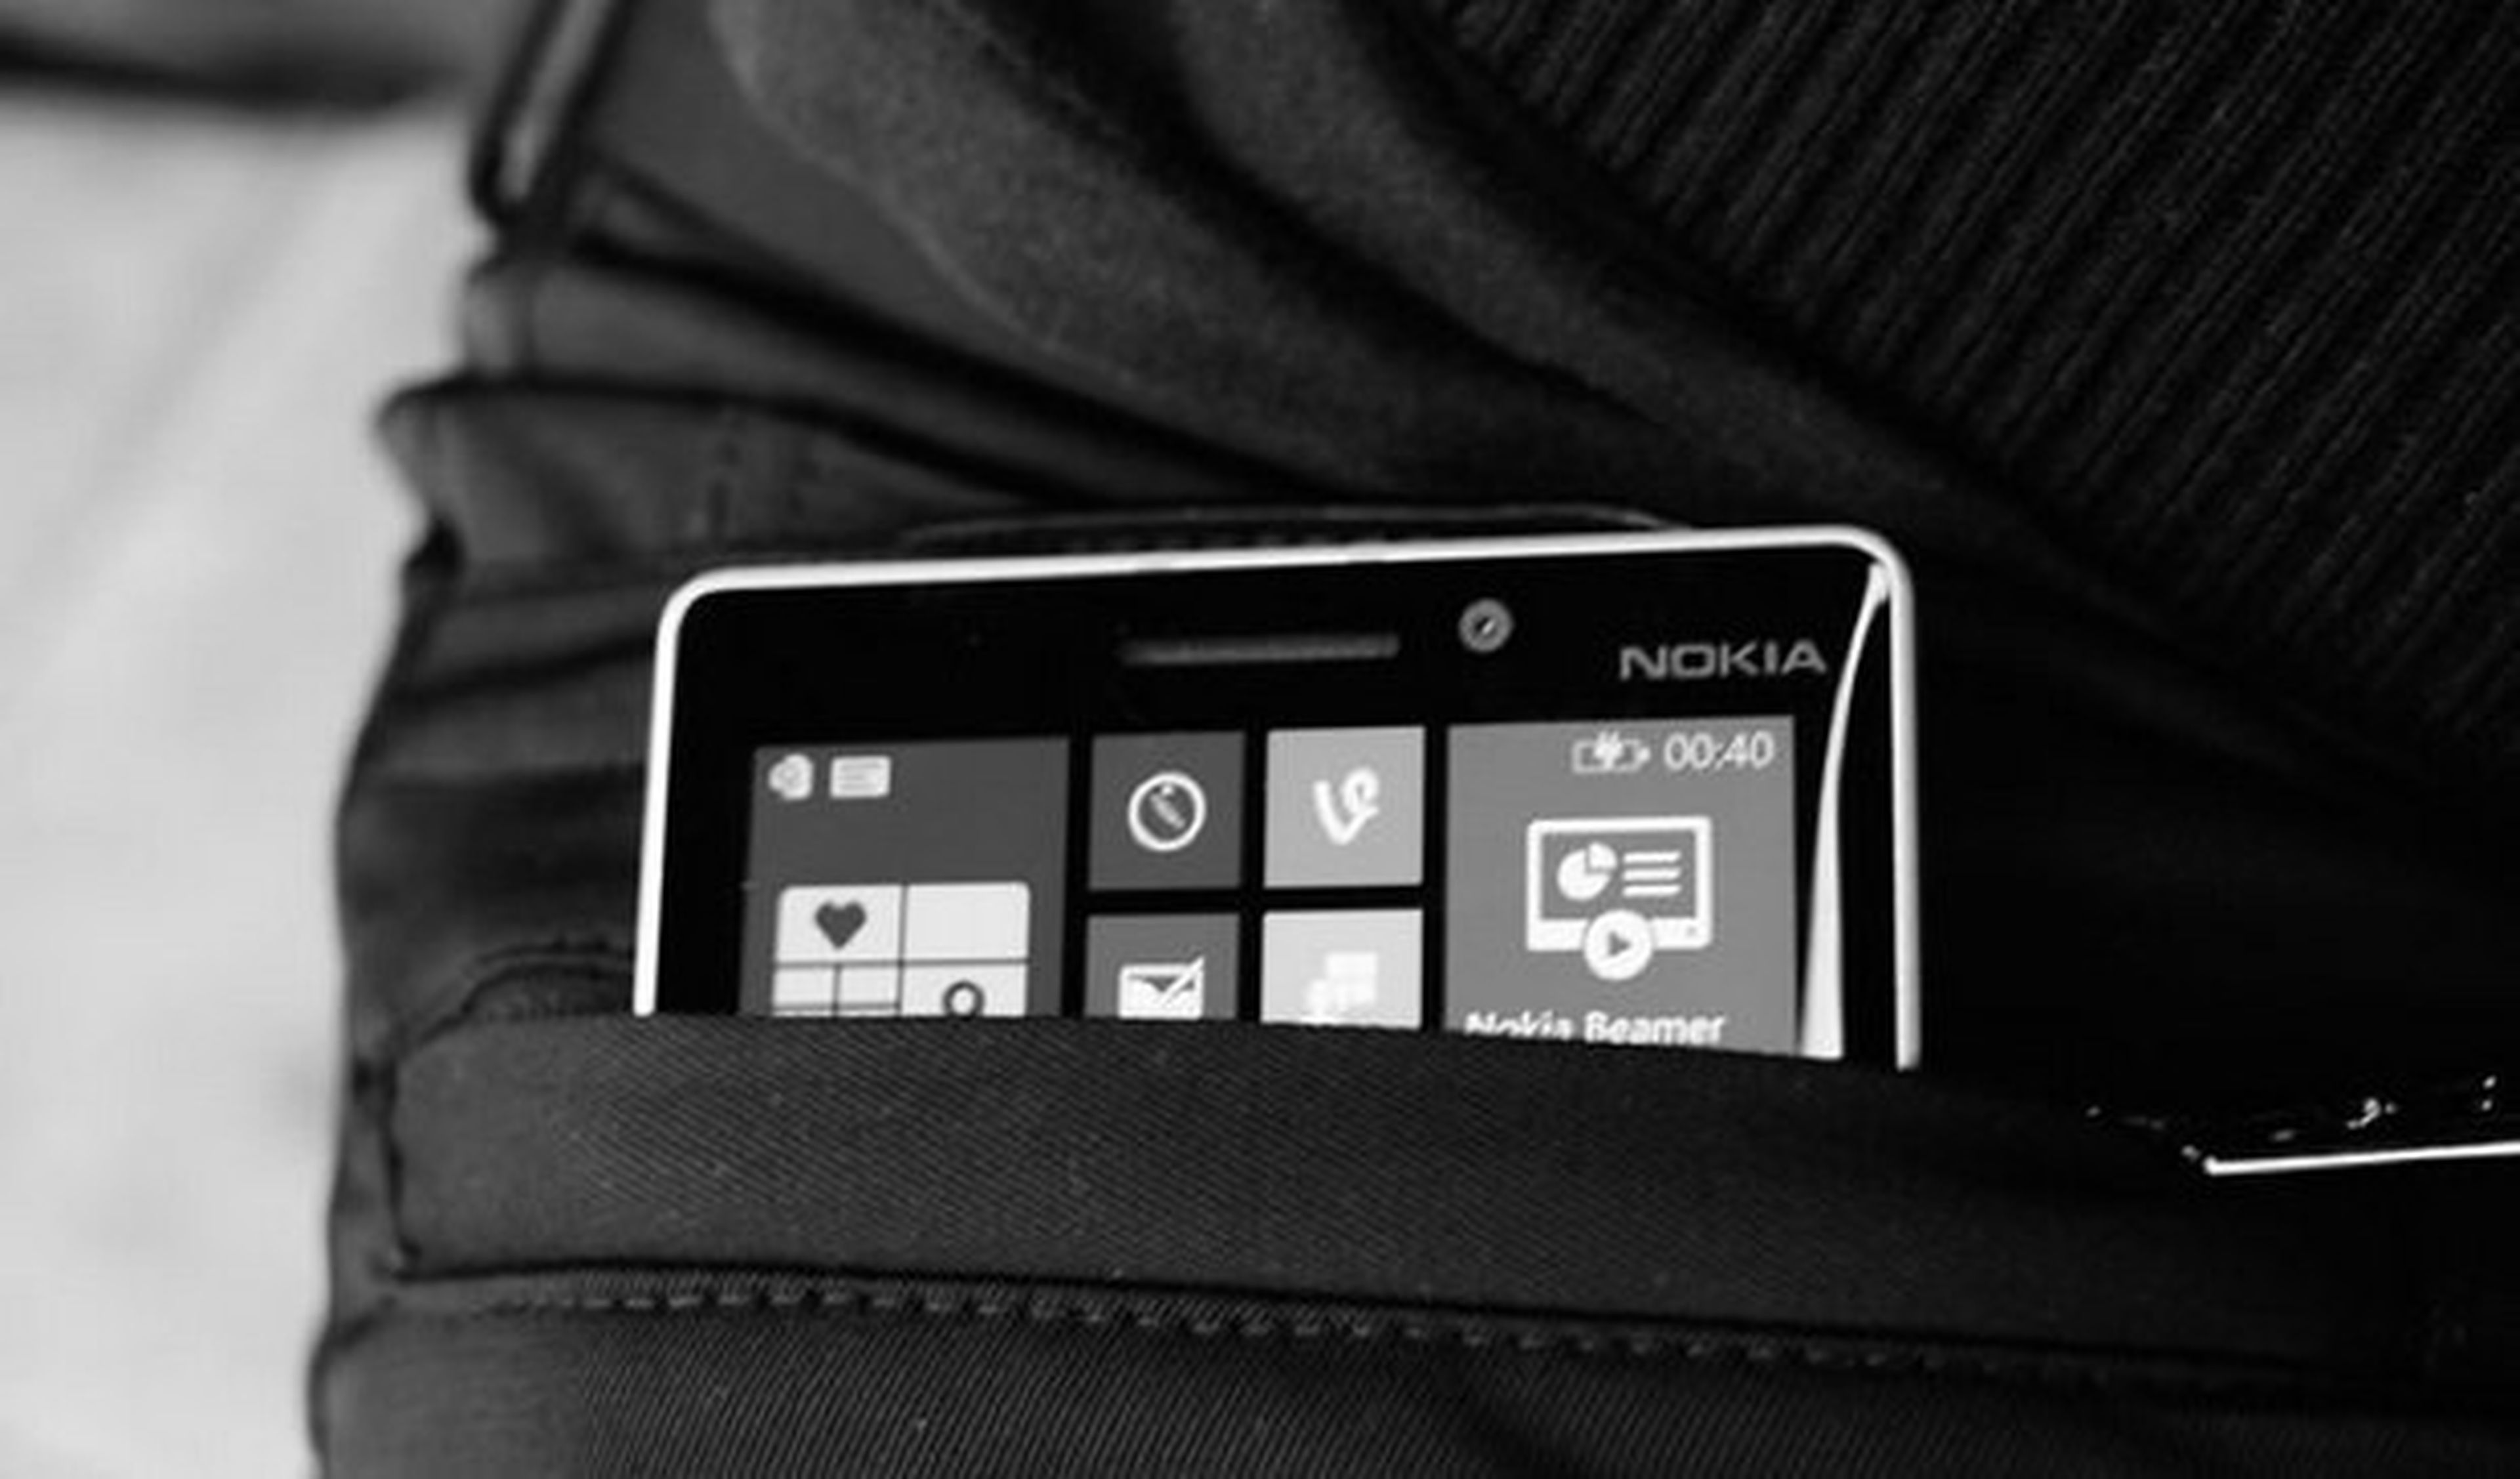 Pantalón de Microsoft que recarga tu móvil